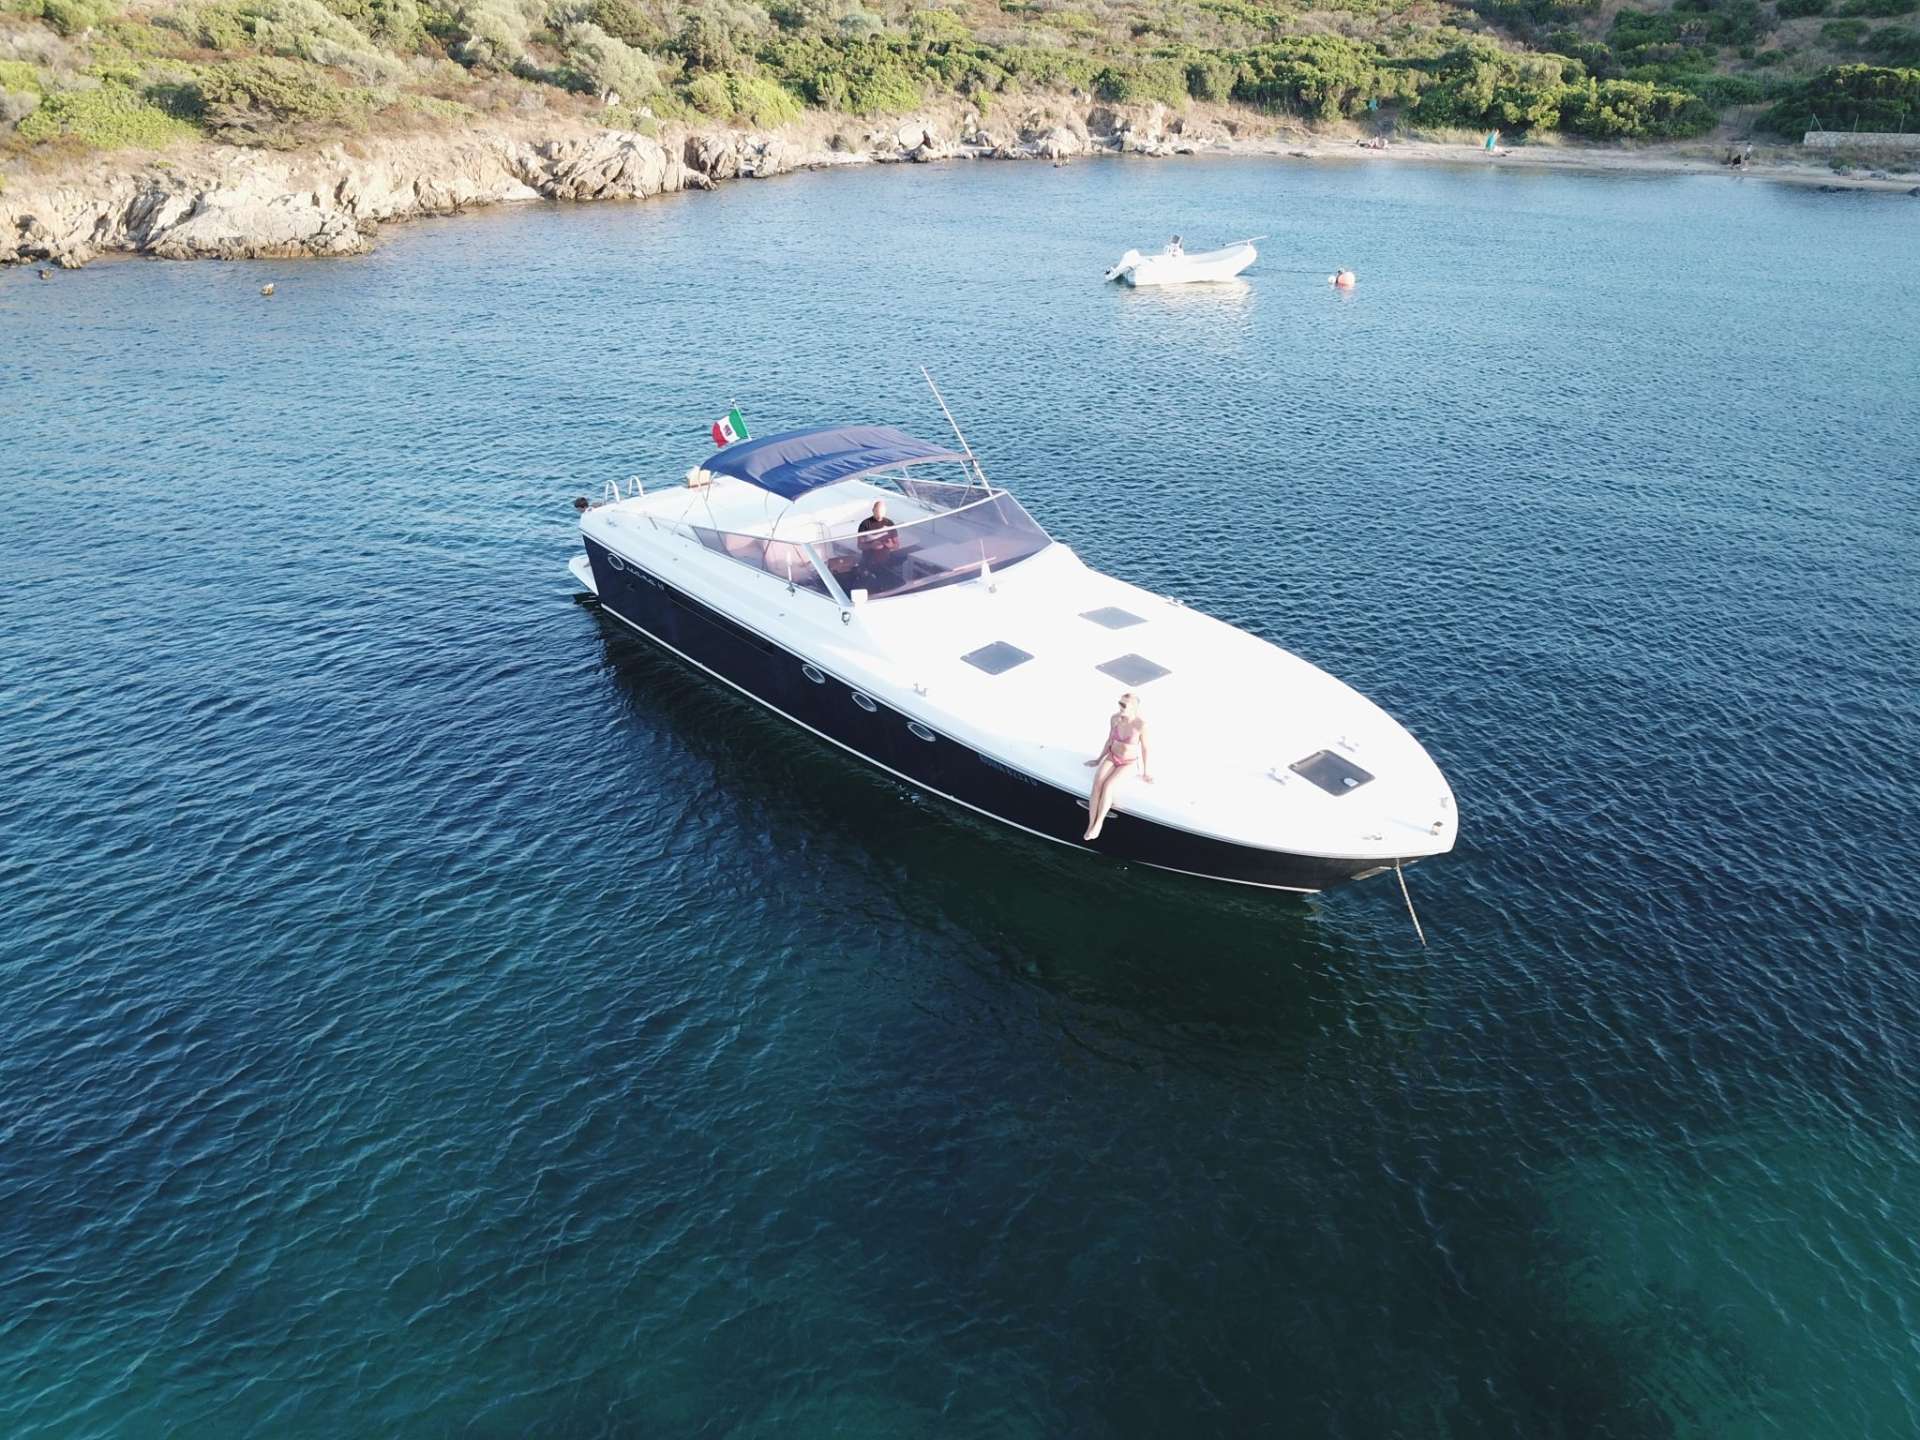 45 - Motor Boat Charter Italy & Boat hire in Italy Sardinia Costa Smeralda Olbia 1